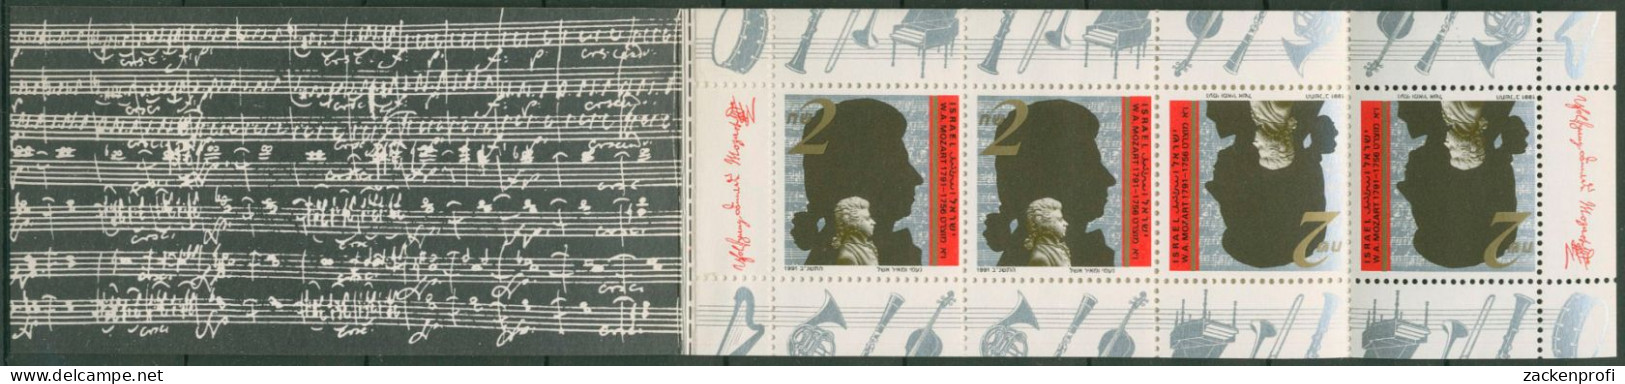 Israel 1991 Wolfgang Amadeus Mozart Markenheftchen 1204 MH Postfrisch (C61280) - Booklets